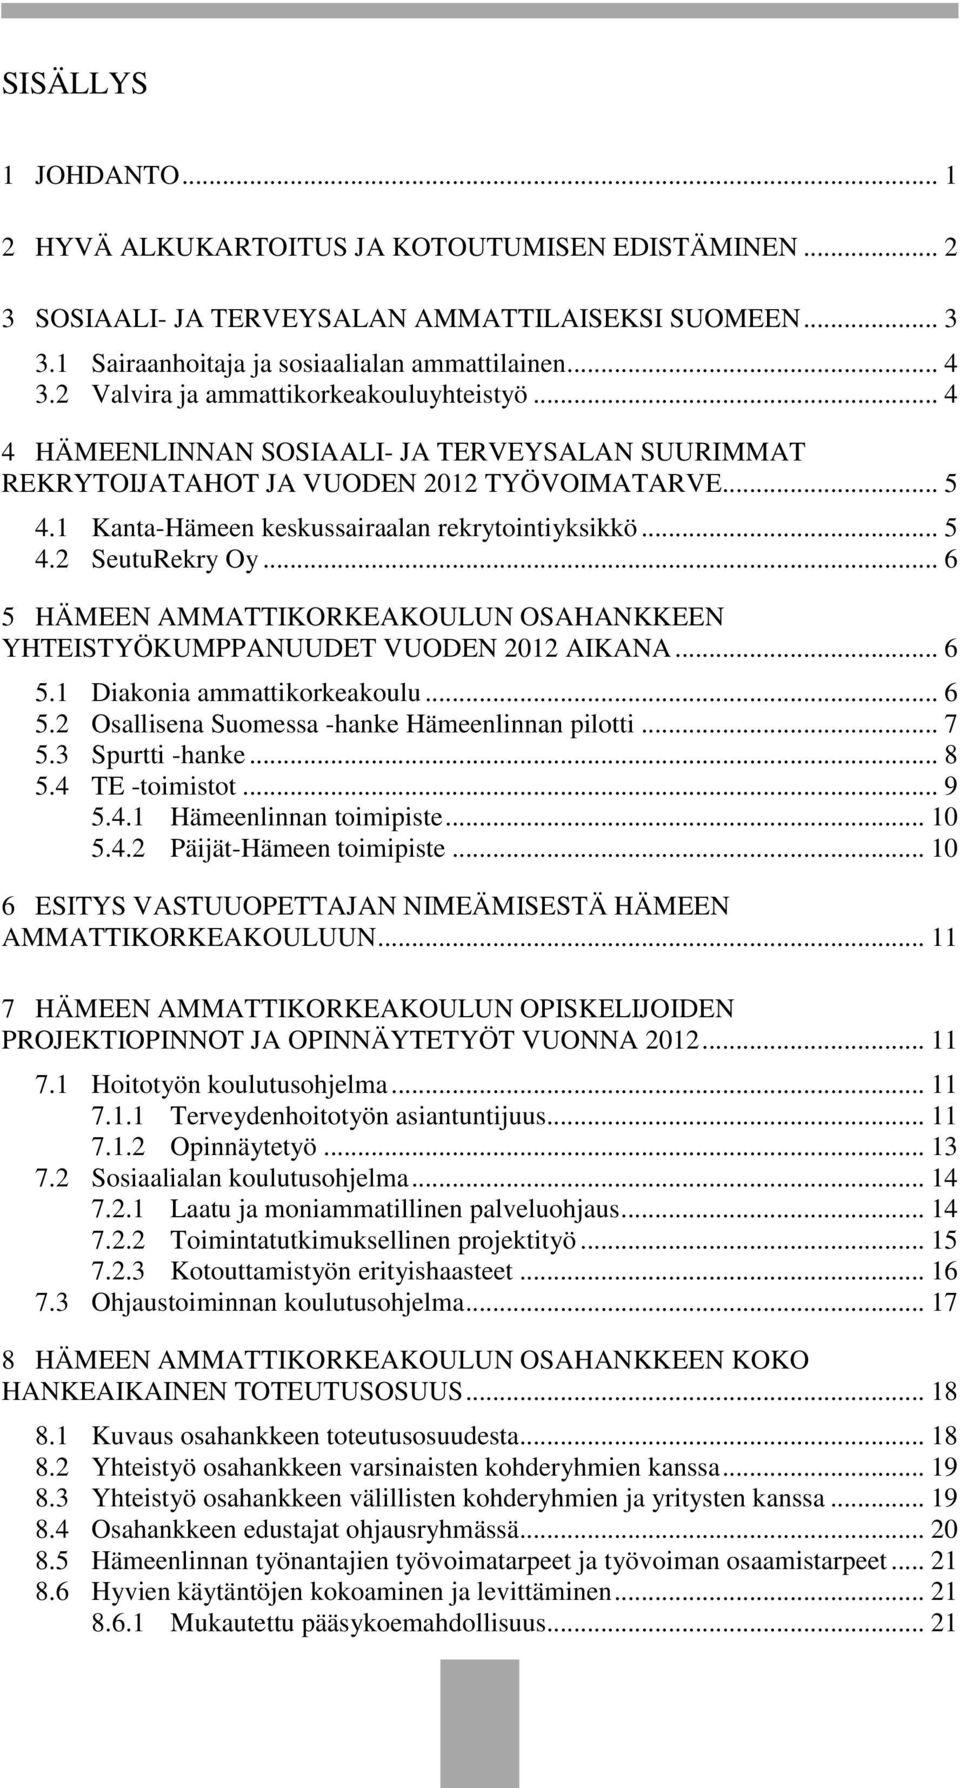 .. 5 4.2 SeutuRekry Oy... 6 5 HÄMEEN AMMATTIKORKEAKOULUN OSAHANKKEEN YHTEISTYÖKUMPPANUUDET VUODEN 2012 AIKANA... 6 5.1 Diakonia ammattikorkeakoulu... 6 5.2 Osallisena Suomessa -hanke Hämeenlinnan pilotti.